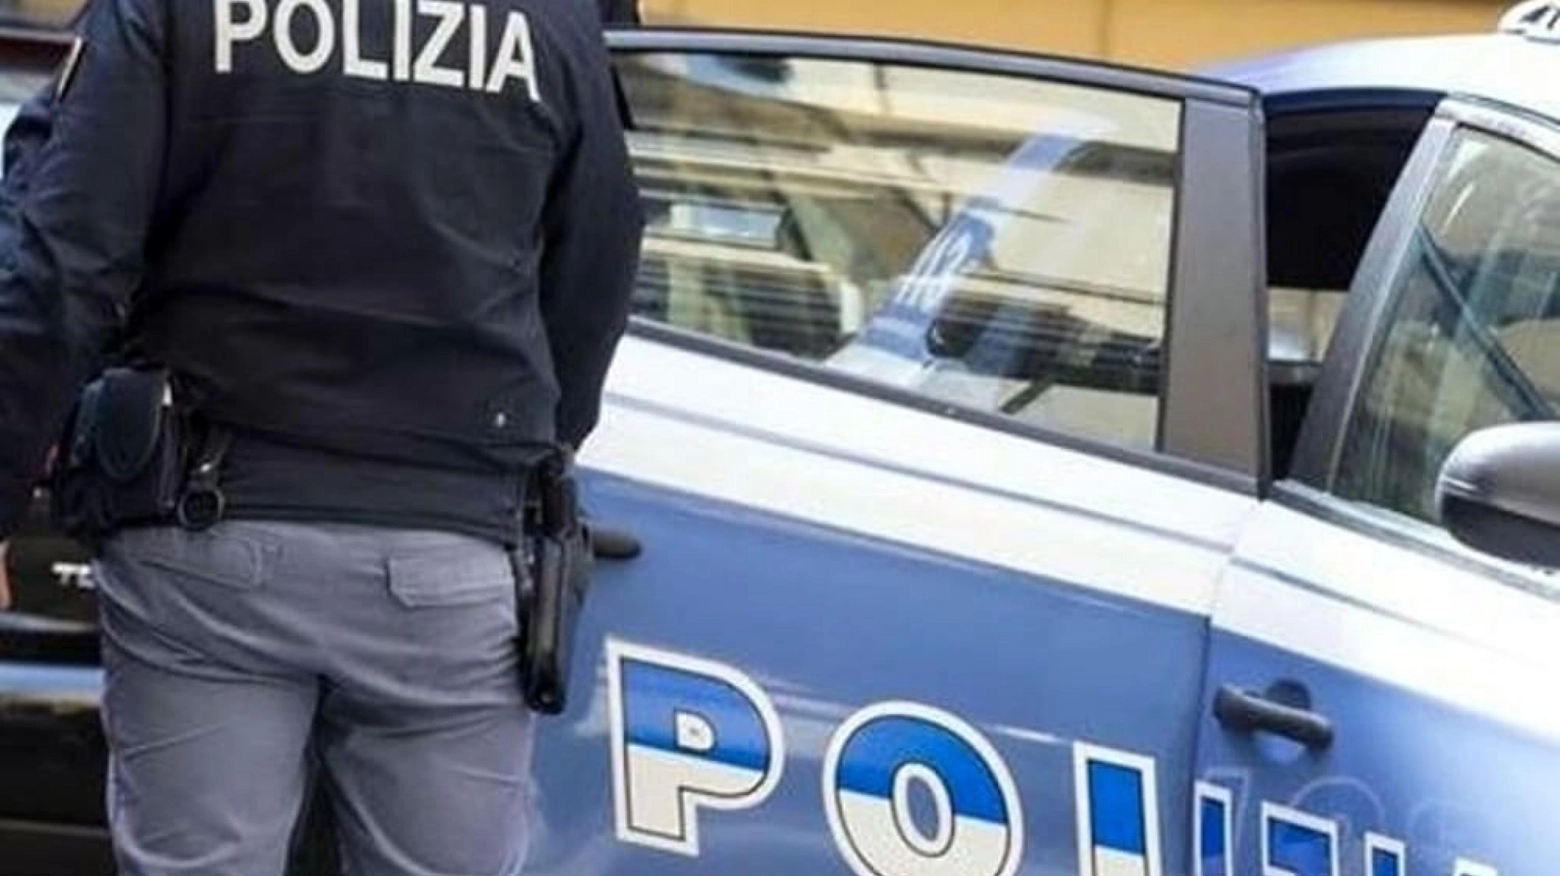 Violenze in Questura, arrestati un ispettore e 4 agenti a Verona